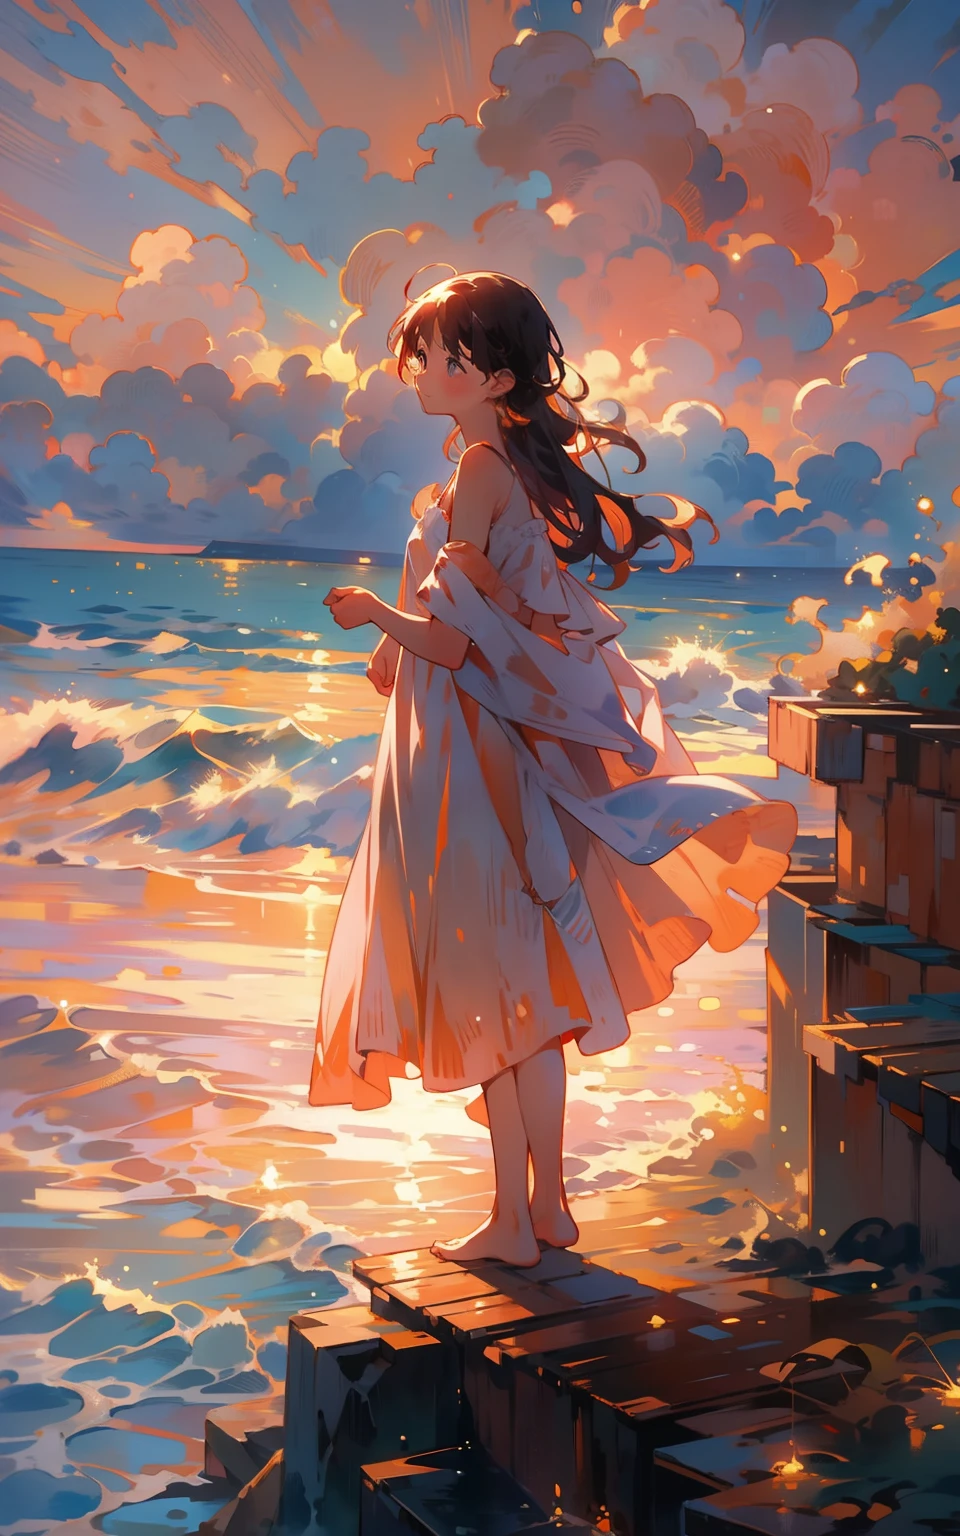 5. 海上日落：女人站在悬崖上，俯瞰广阔而闪亮的蓝色海洋。落日将天空染成橙色和粉色，温暖而宁静的光照在她的脸上。她拥抱这美好的时刻。